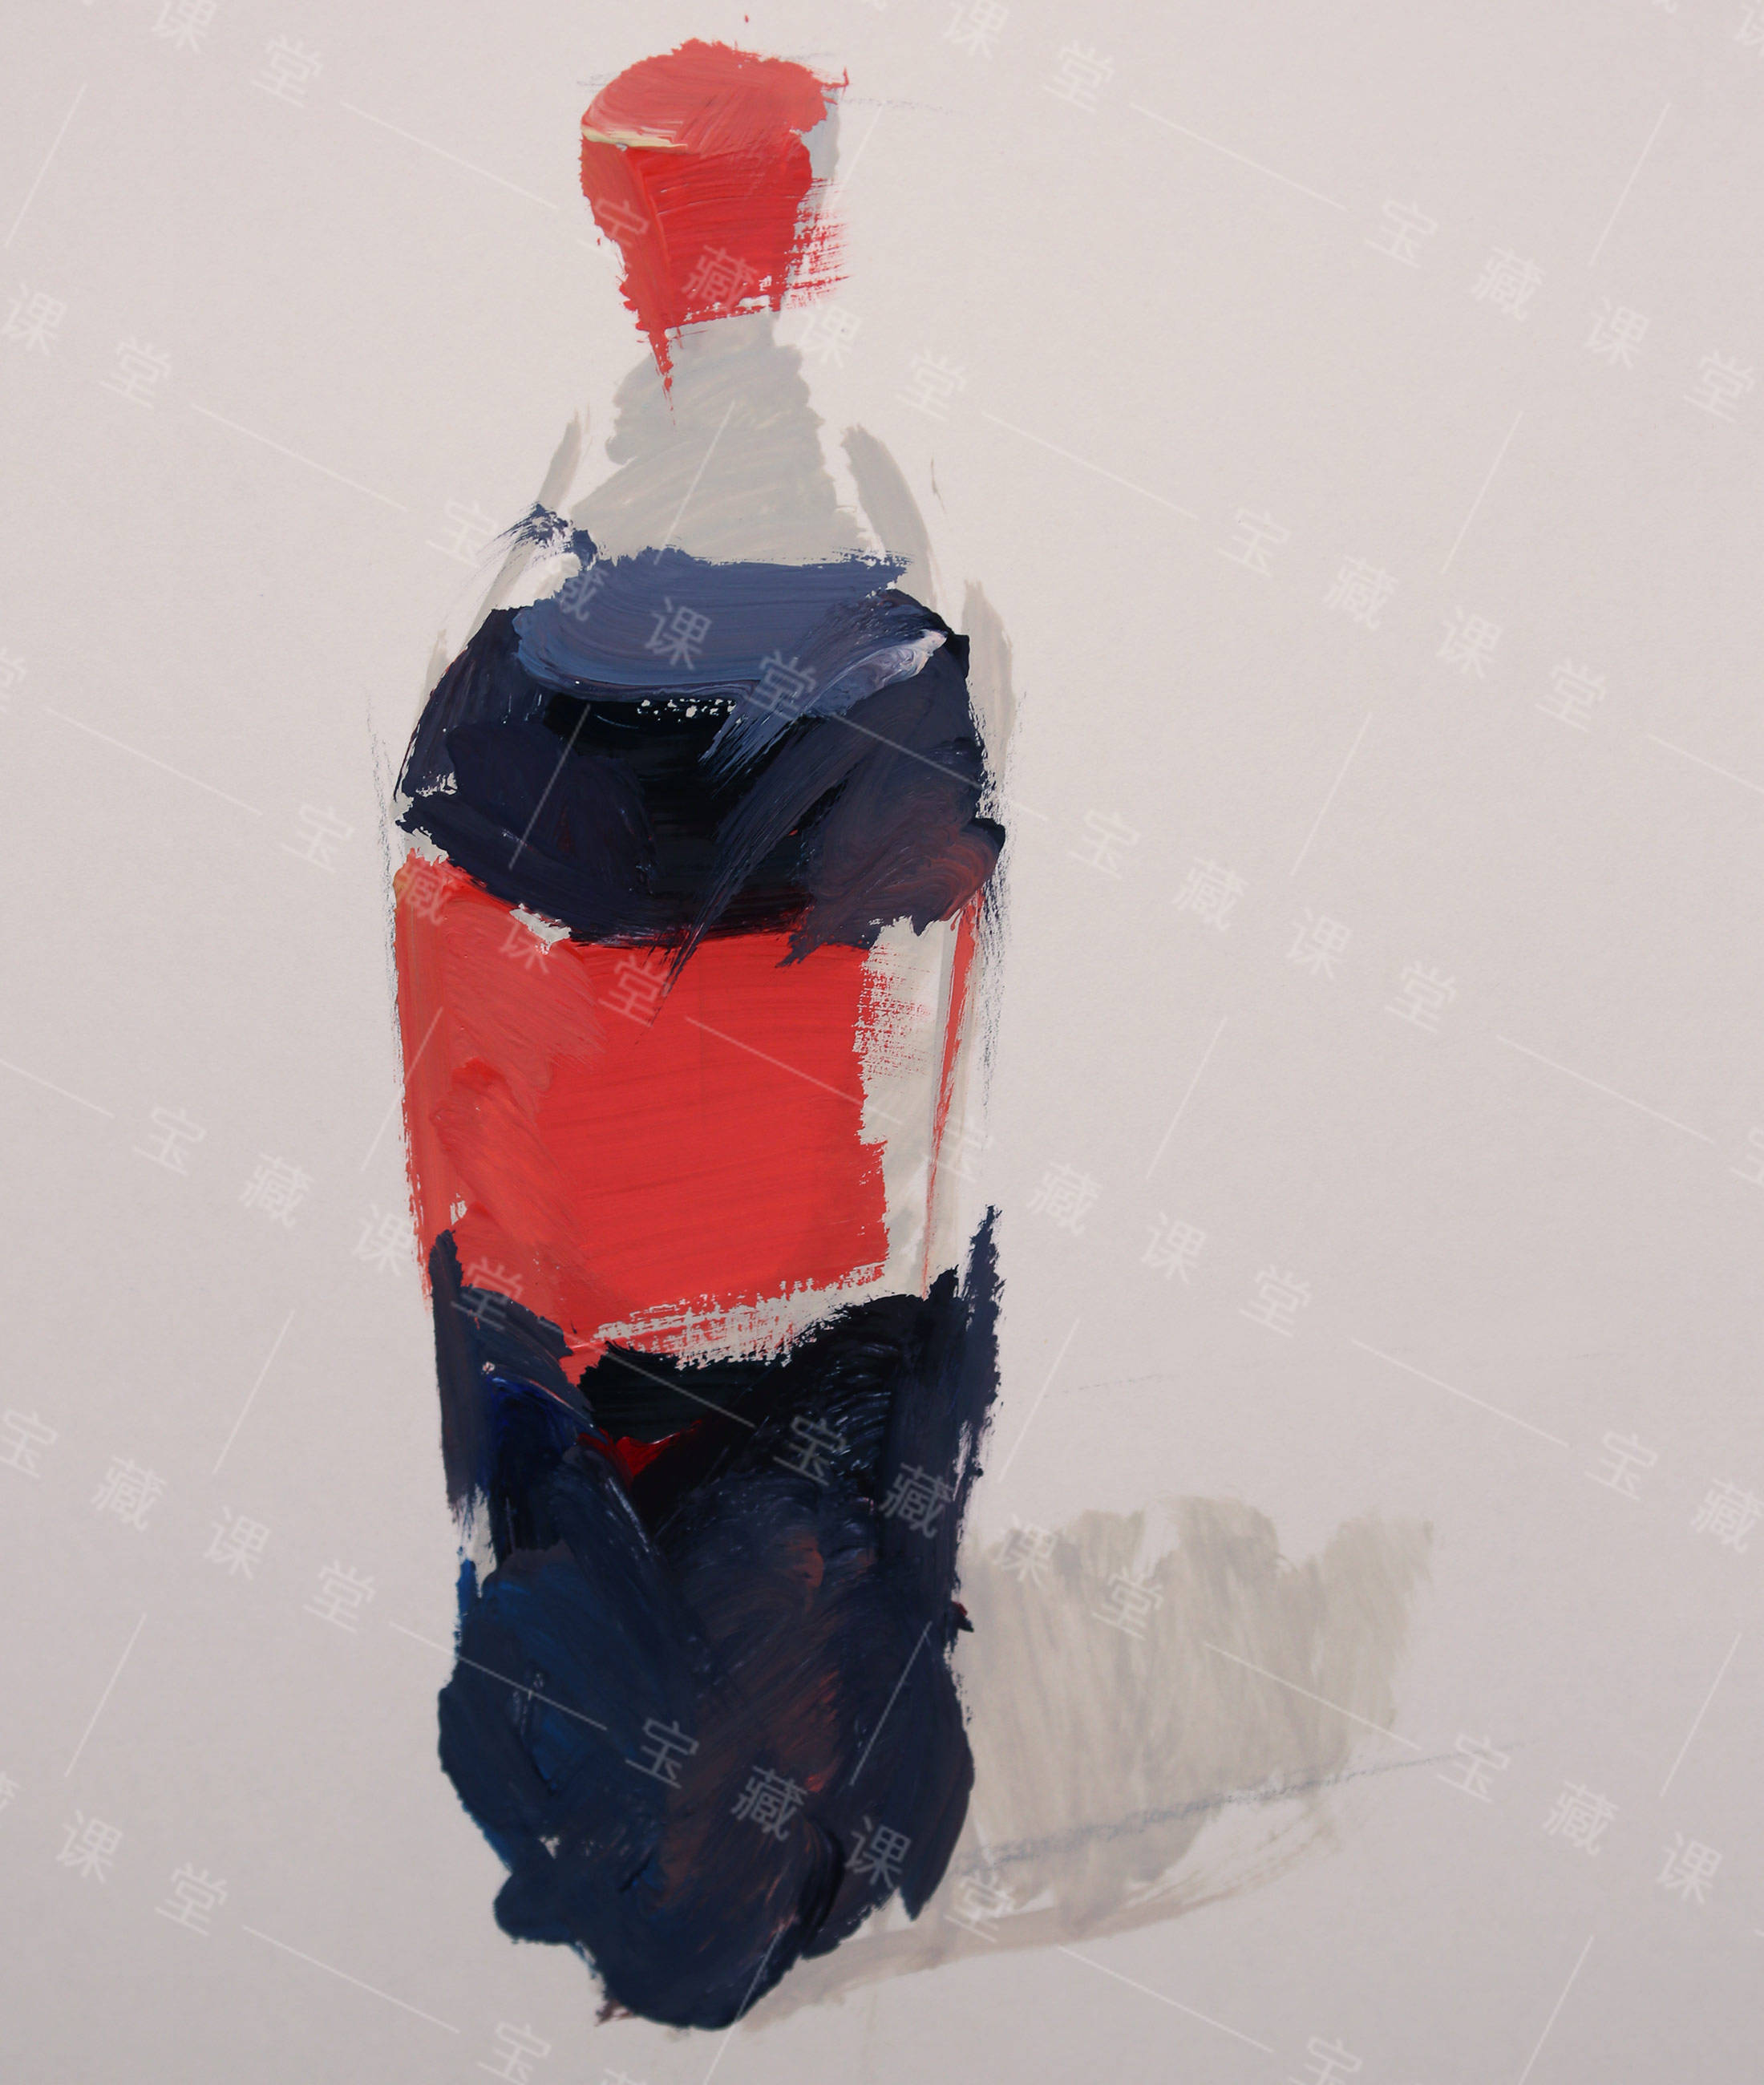 色彩静物常见单体可乐瓶课程训练步骤图分享宝藏美术网校